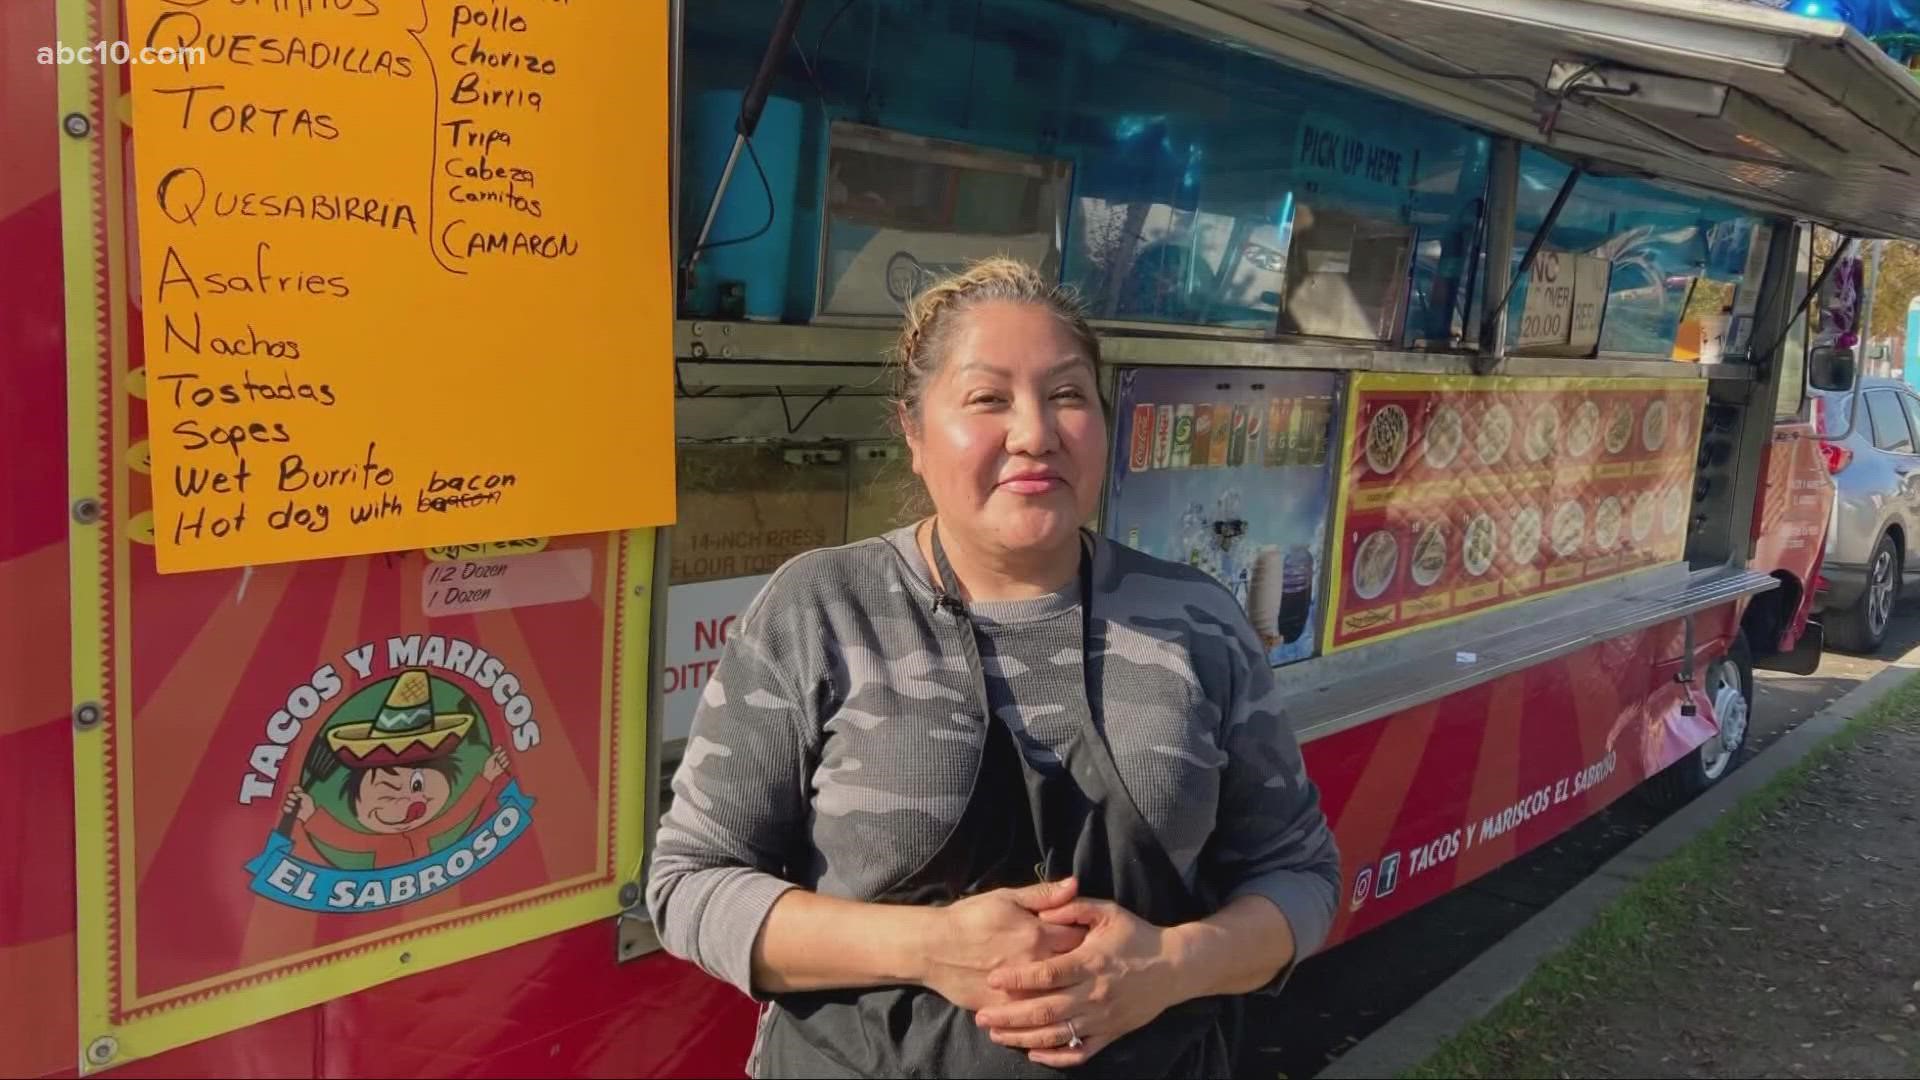 El Sobroso Tacos Y Mariscos in Stockton: A dream come true 